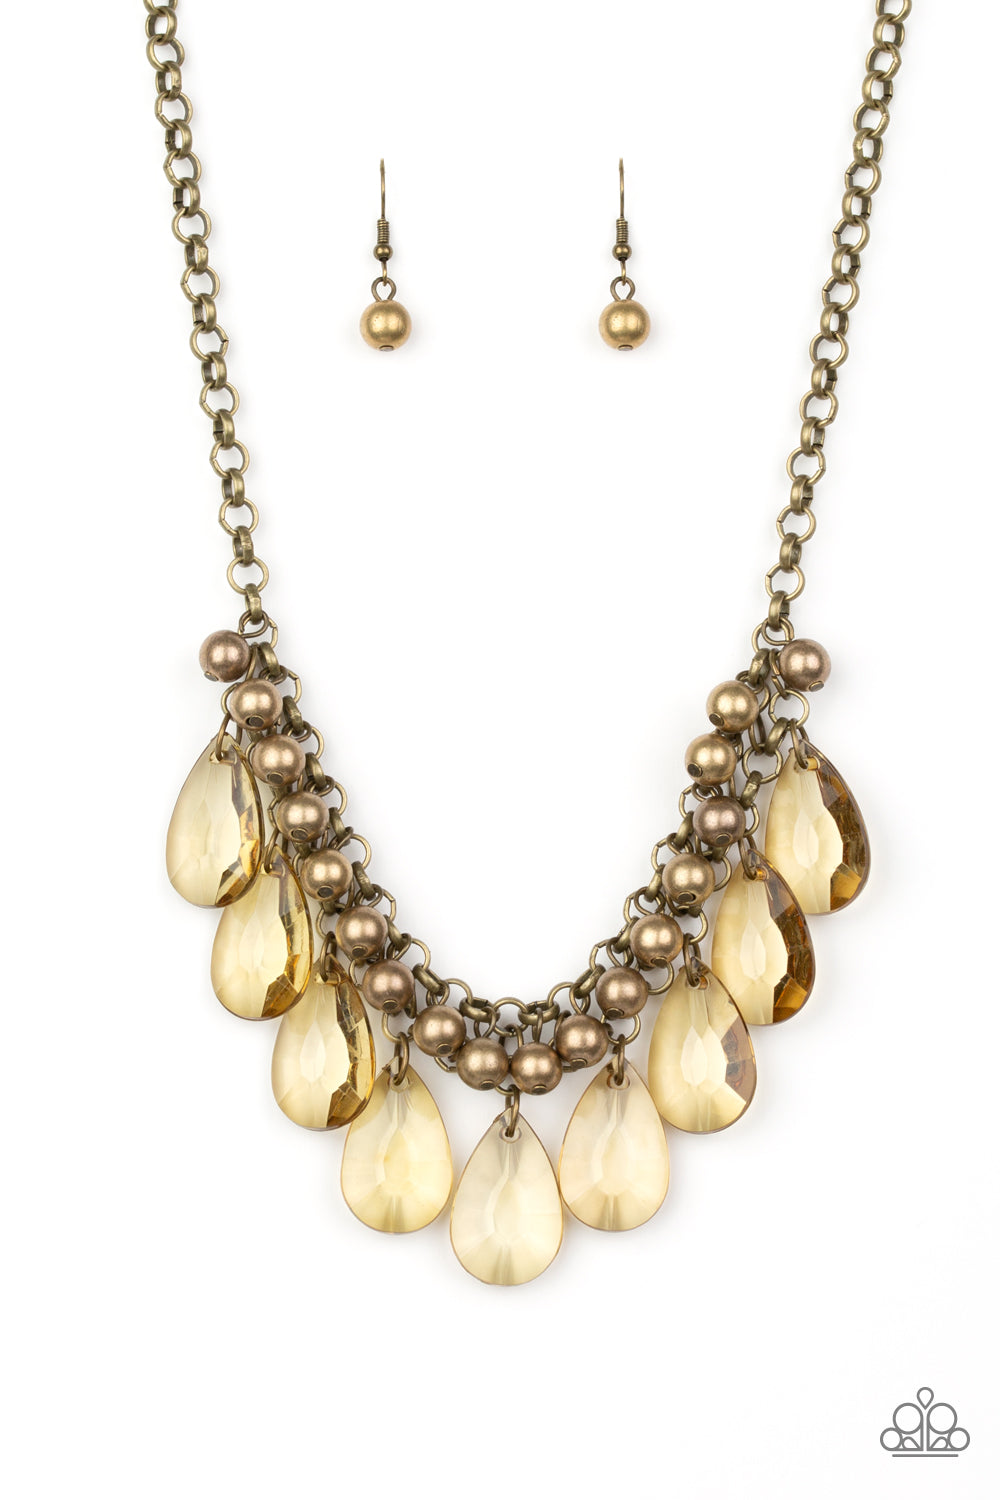 Fashionista Flair - Brass Necklace - Paparazzi Accessories - Paparazzi Accessories 